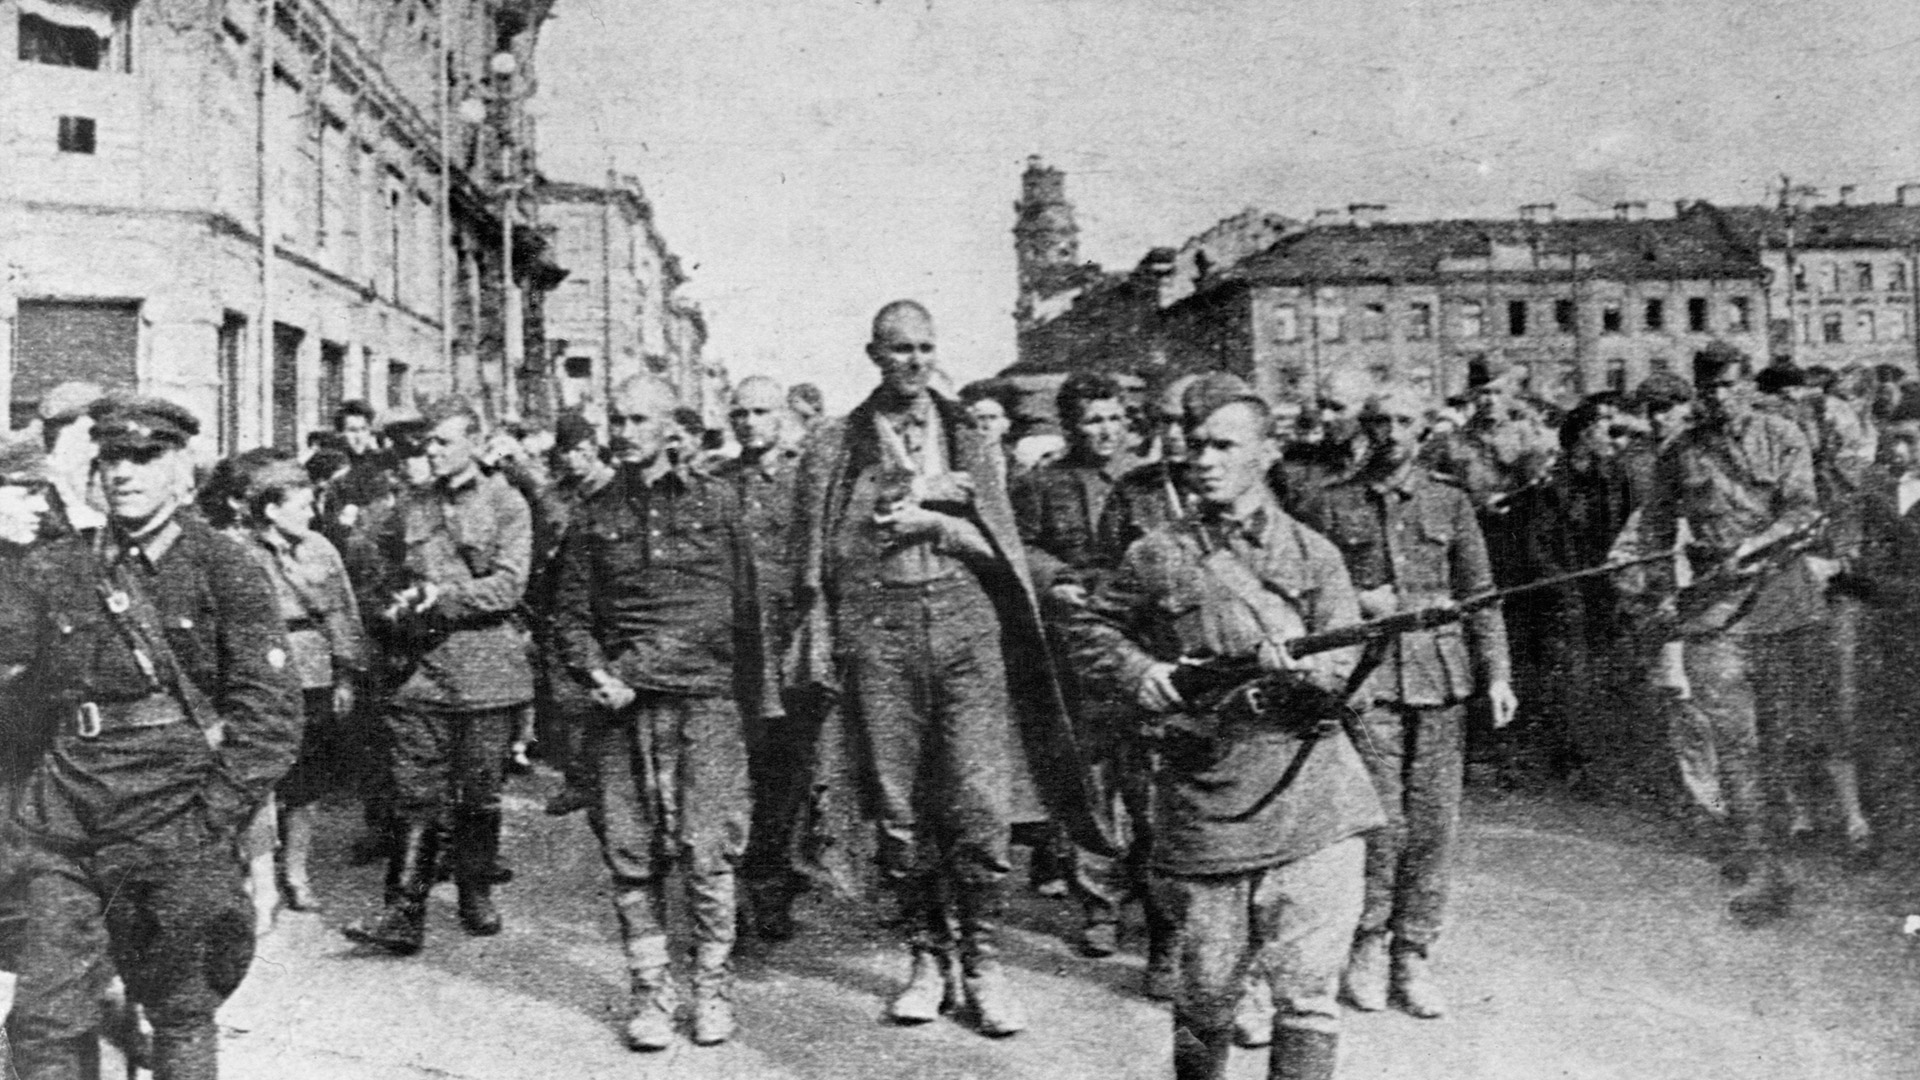 Los soldados rusos conducen a los prisioneros de guerra alemanes por las calles de Leningrado, una ciudad que los alemanes no pudieron capturar a pesar de un largo asedio que duró entre 1941 y 1944 (Corbis vía Getty Images)